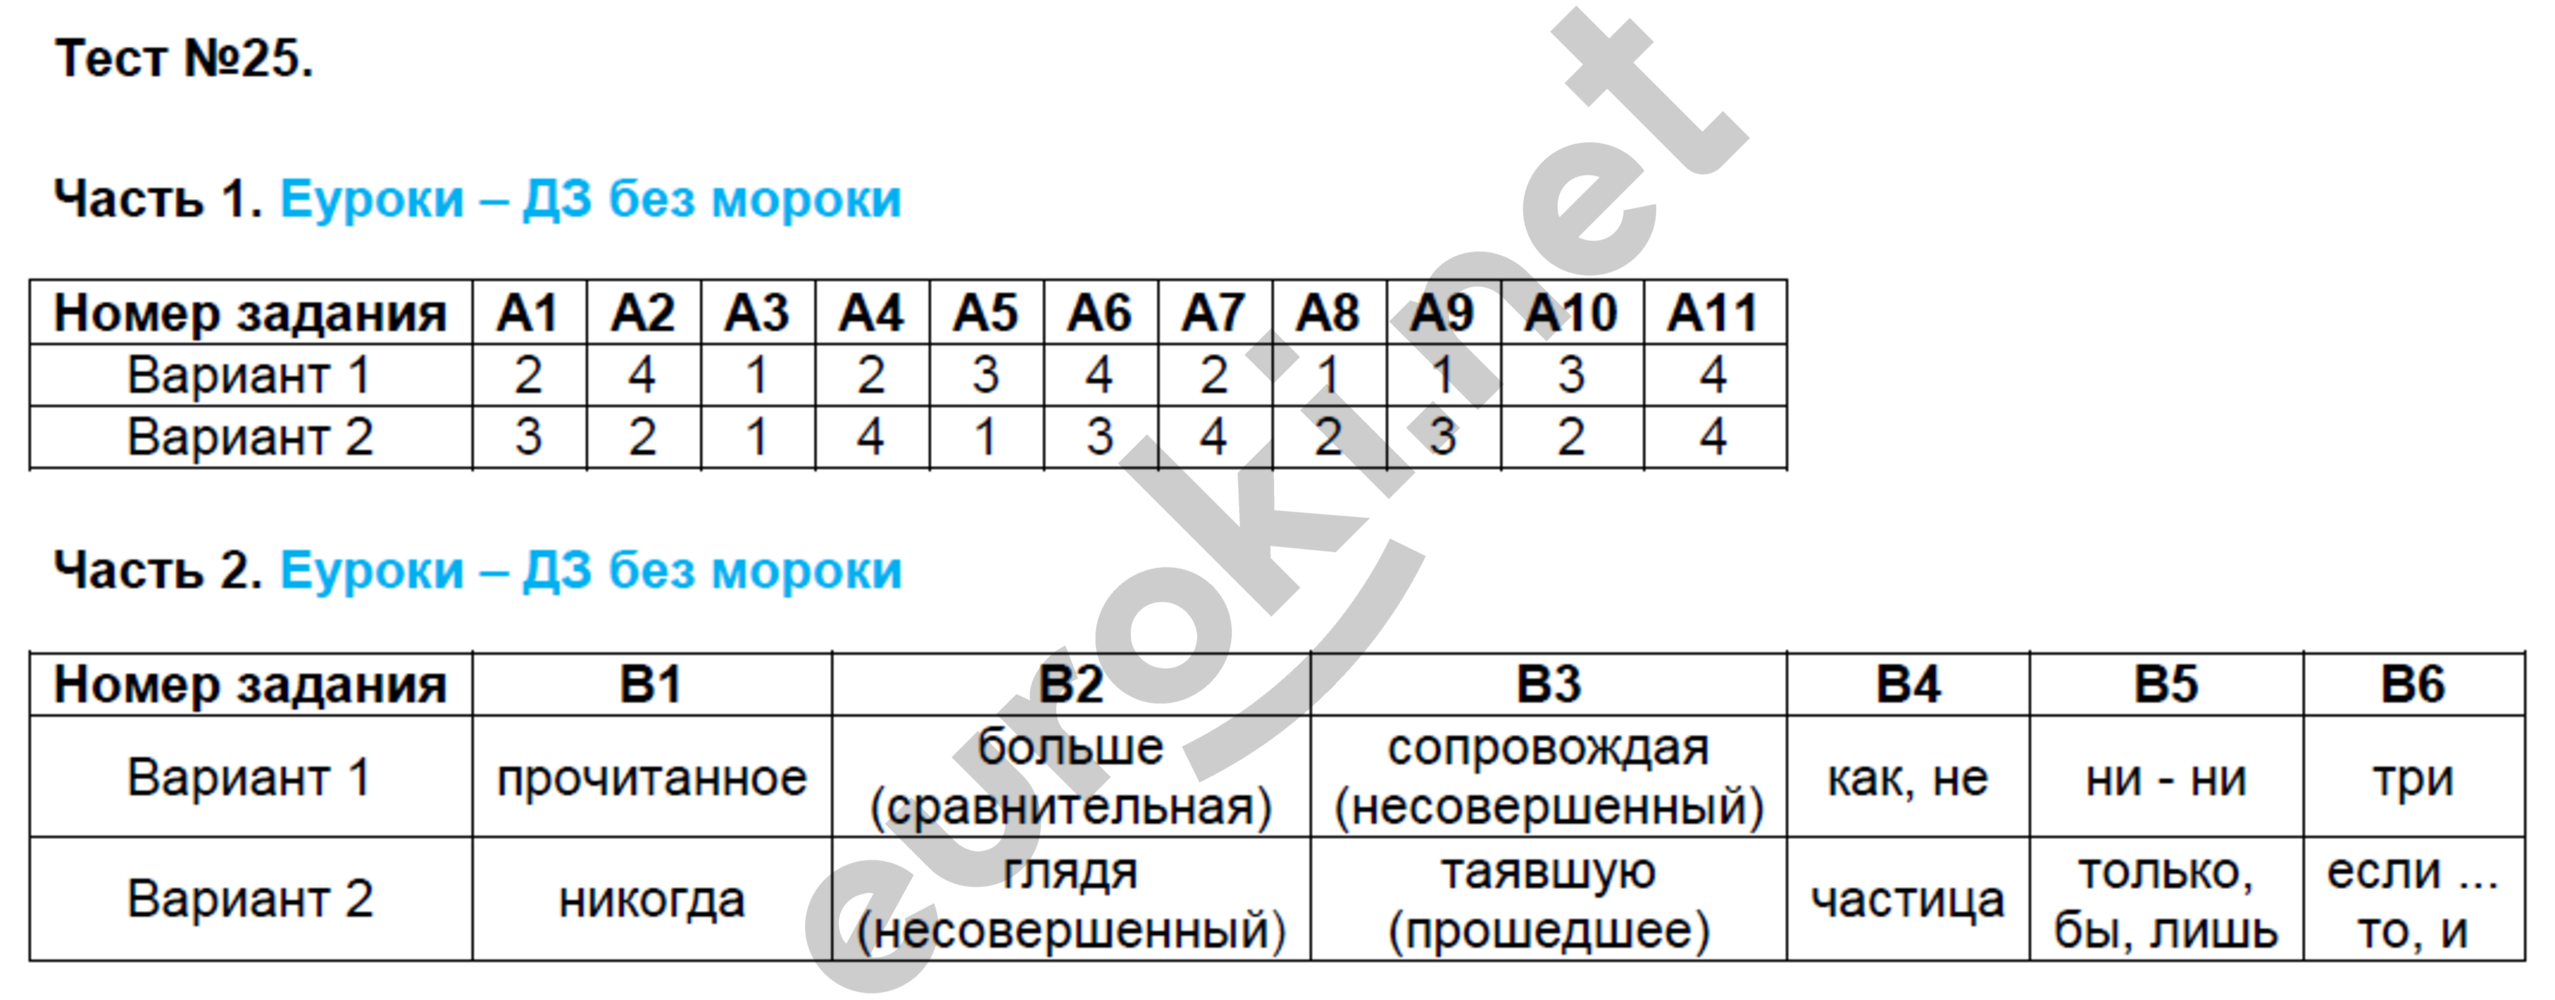 Контрольно измерительные материалы тесты ответы. Тесты Егорова 7 класс по русскому языку. Русский язык 7 класс тематические тесты Егорова.